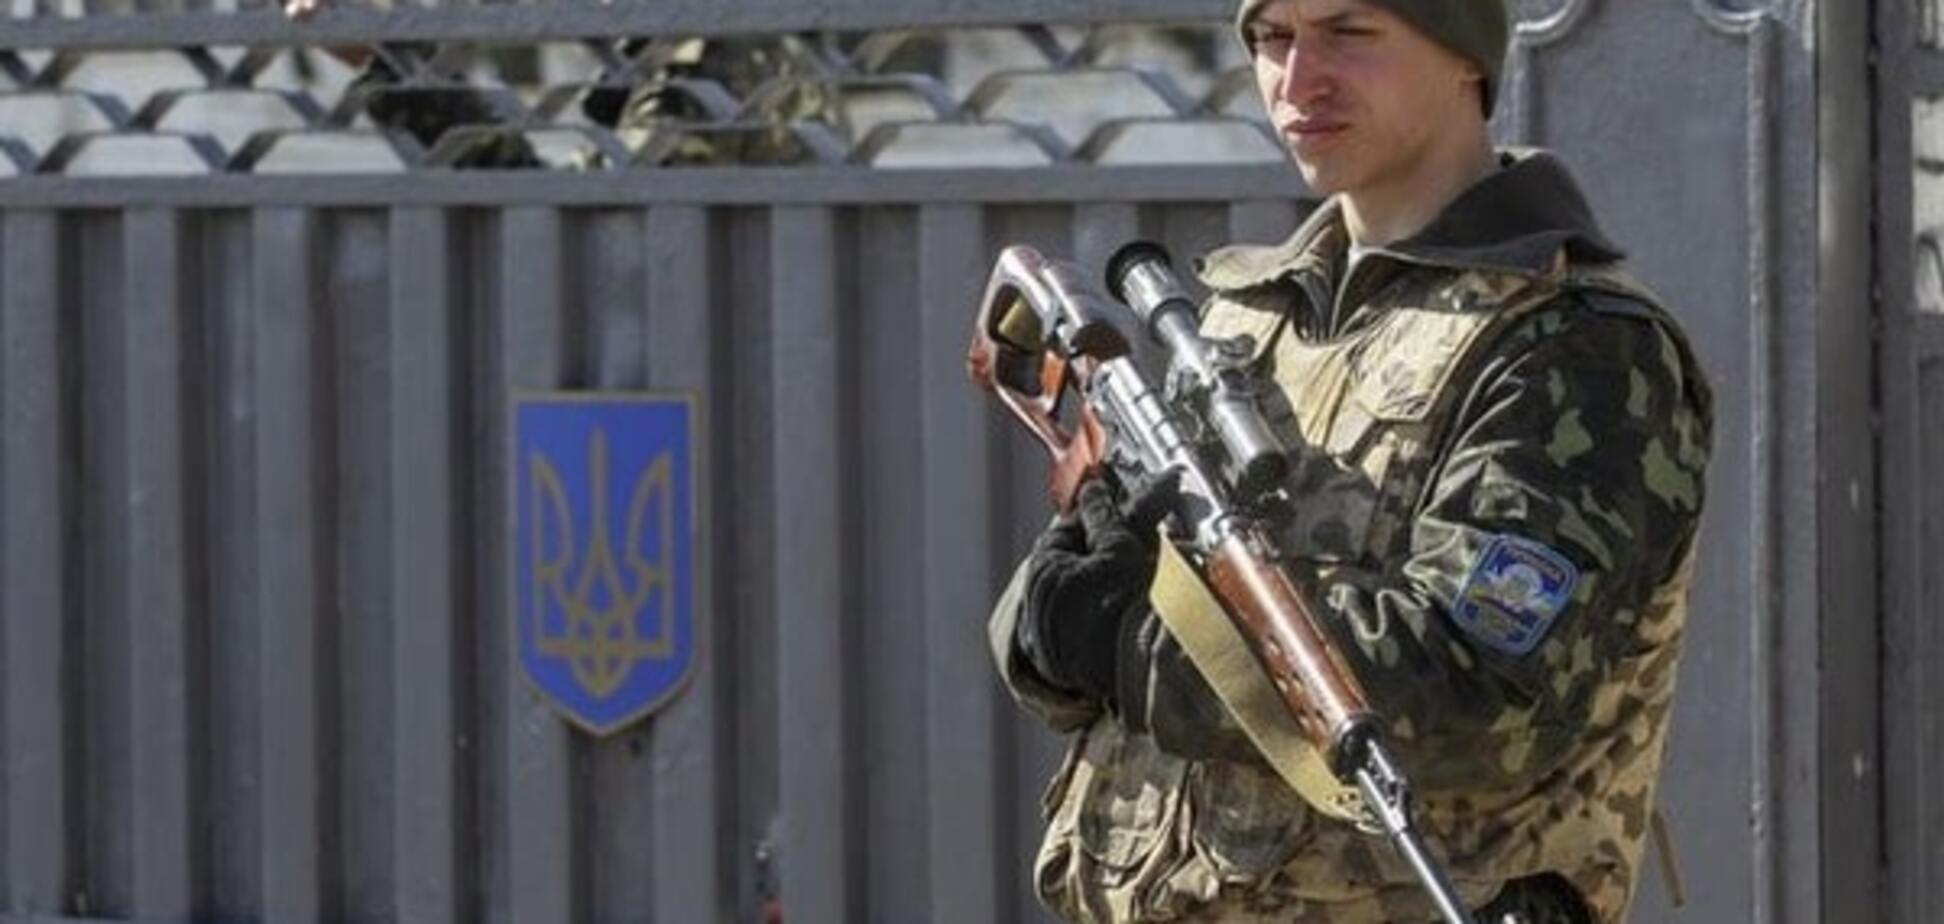 Показуха: боец рассказал, как готовят 'сладкую жизнь' солдат к приезду Порошенко